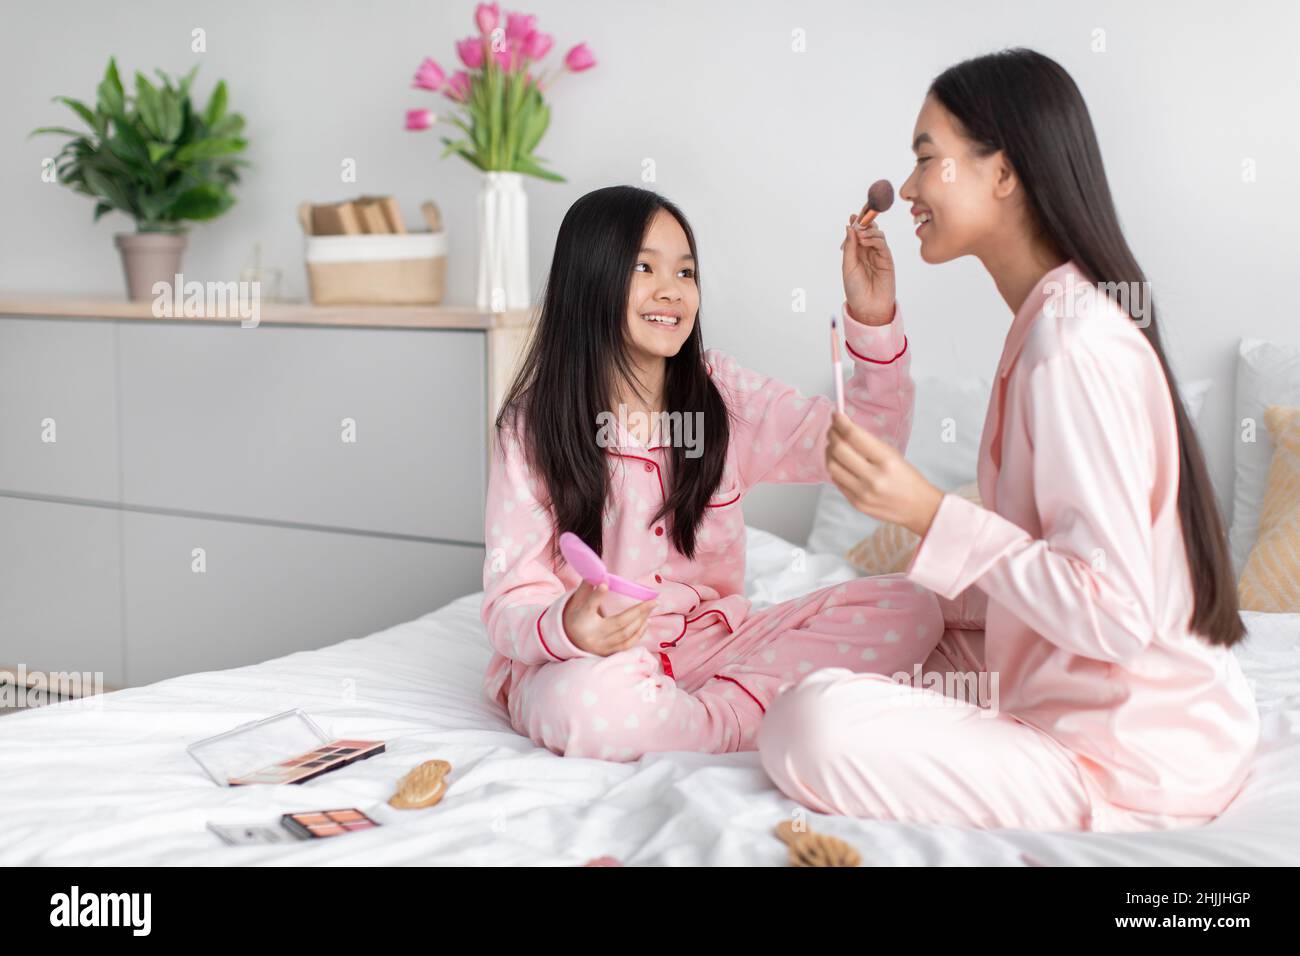 Joyeuse et heureuse jeune fille coréenne appliquant de la poudre au visage de femme millénaire, assise sur le lit avec des cosmétiques Banque D'Images